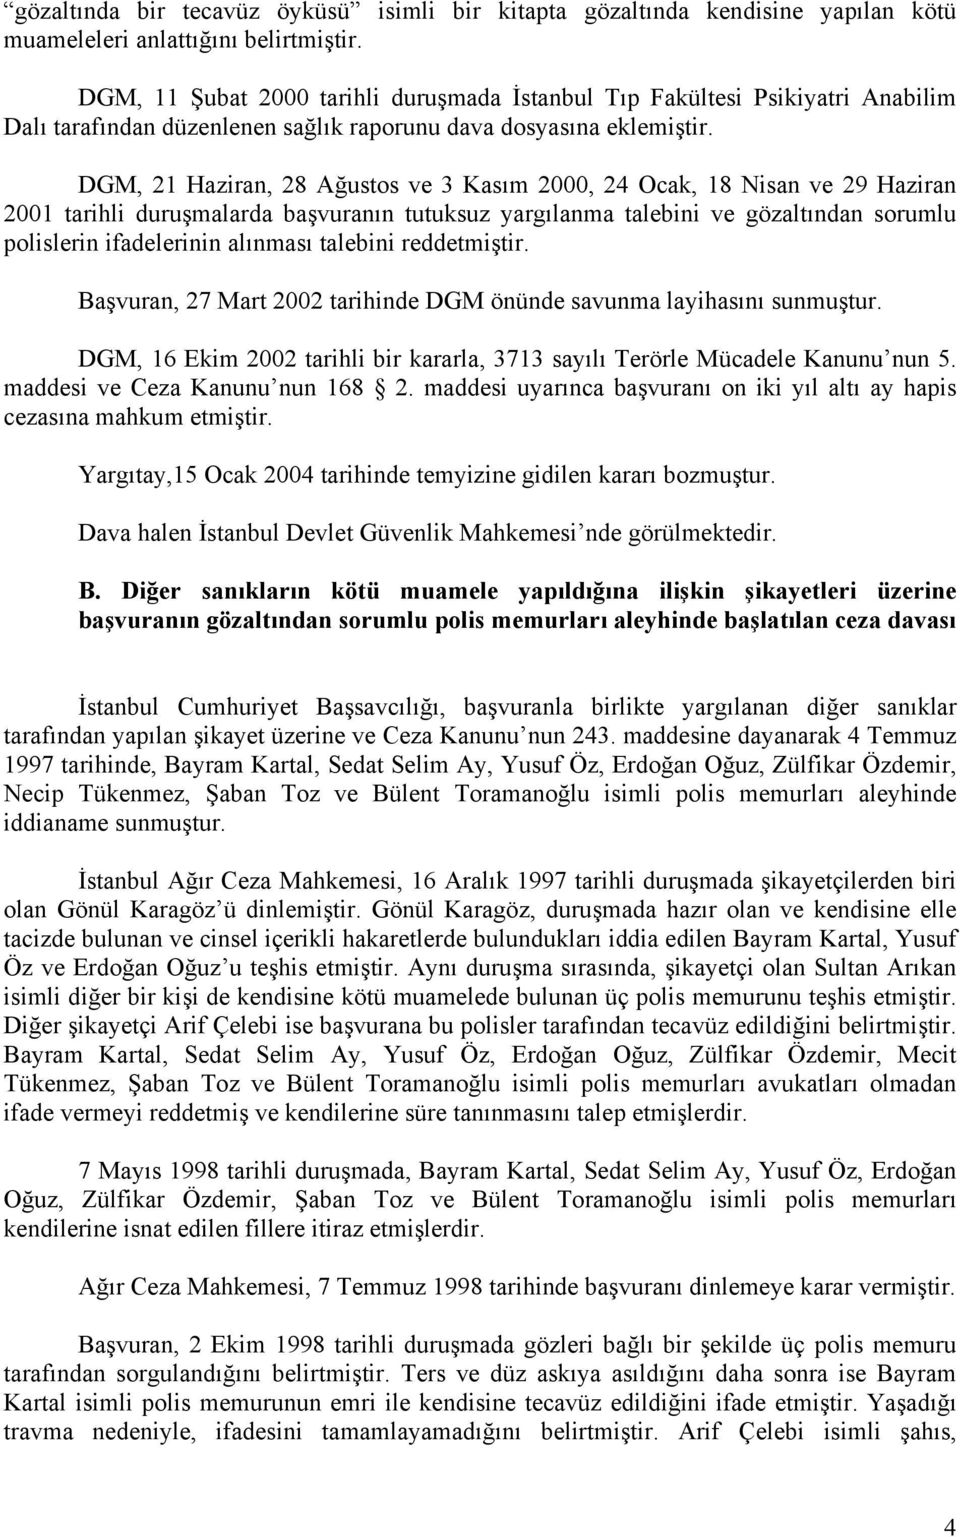 DGM, 21 Haziran, 28 Ağustos ve 3 Kasım 2000, 24 Ocak, 18 Nisan ve 29 Haziran 2001 tarihli duruşmalarda başvuranın tutuksuz yargılanma talebini ve gözaltından sorumlu polislerin ifadelerinin alınması